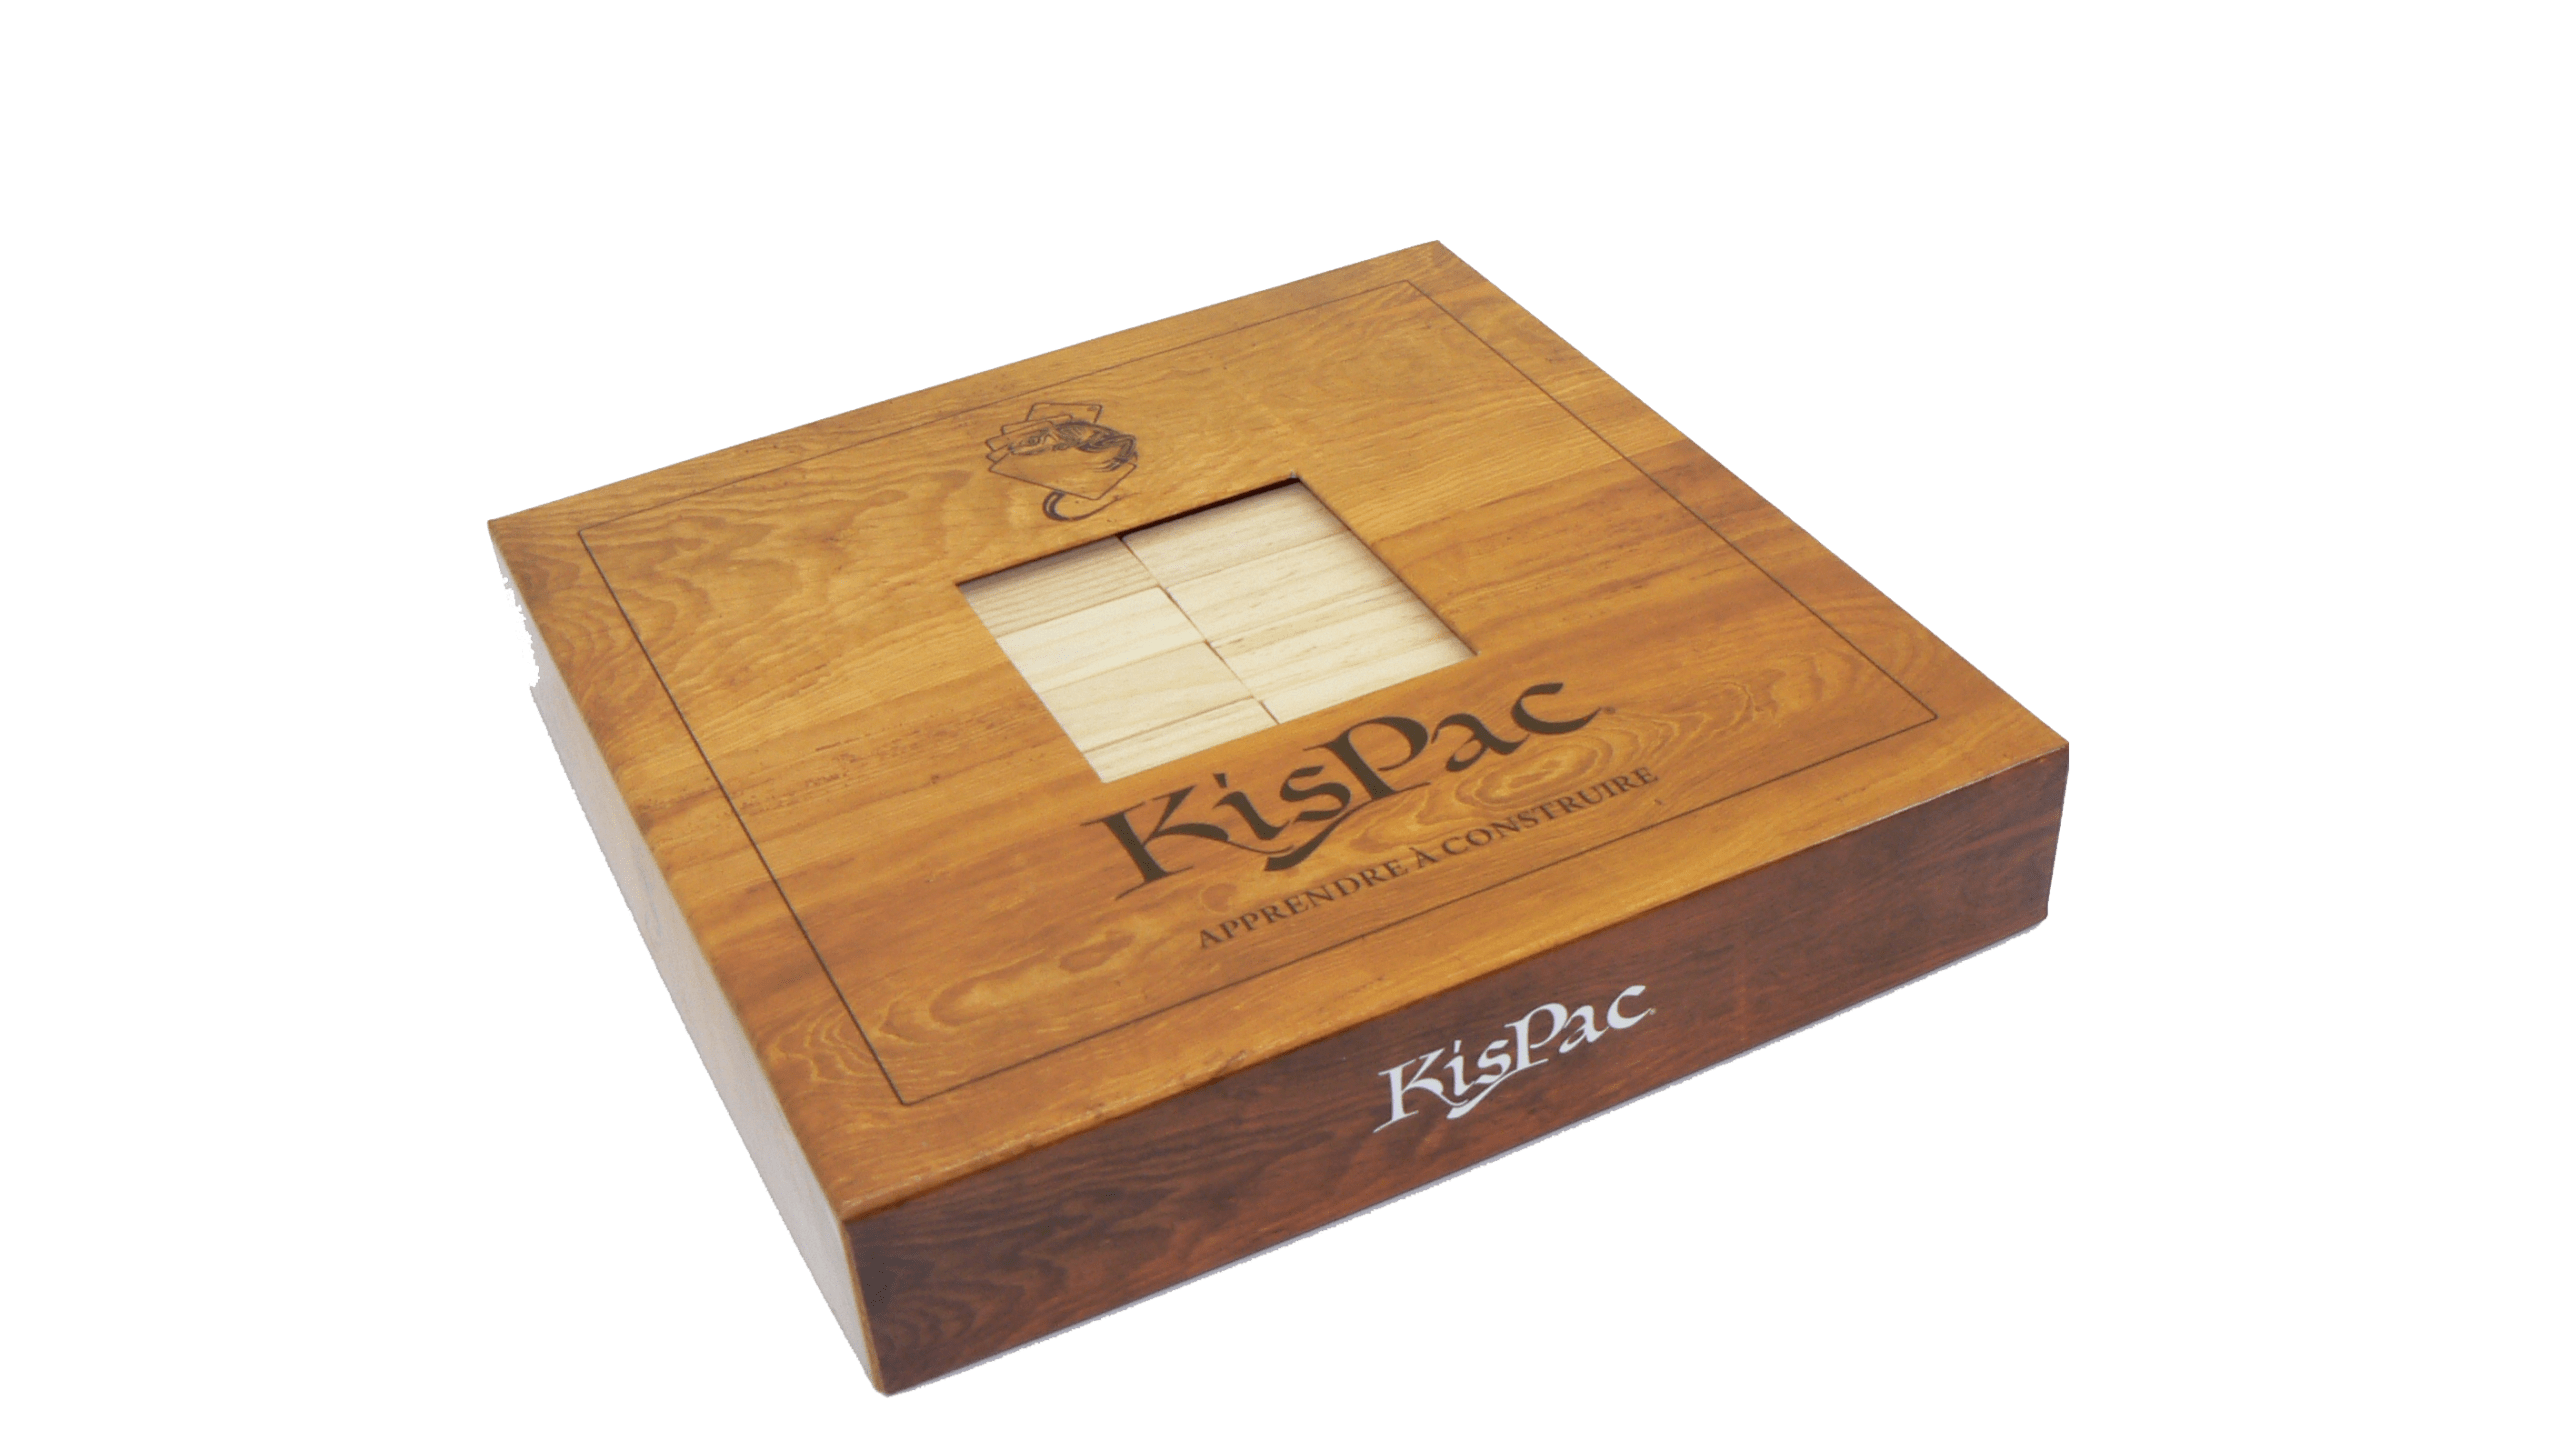 kispac boite naturel kispac planchettes de jeu en bois 200